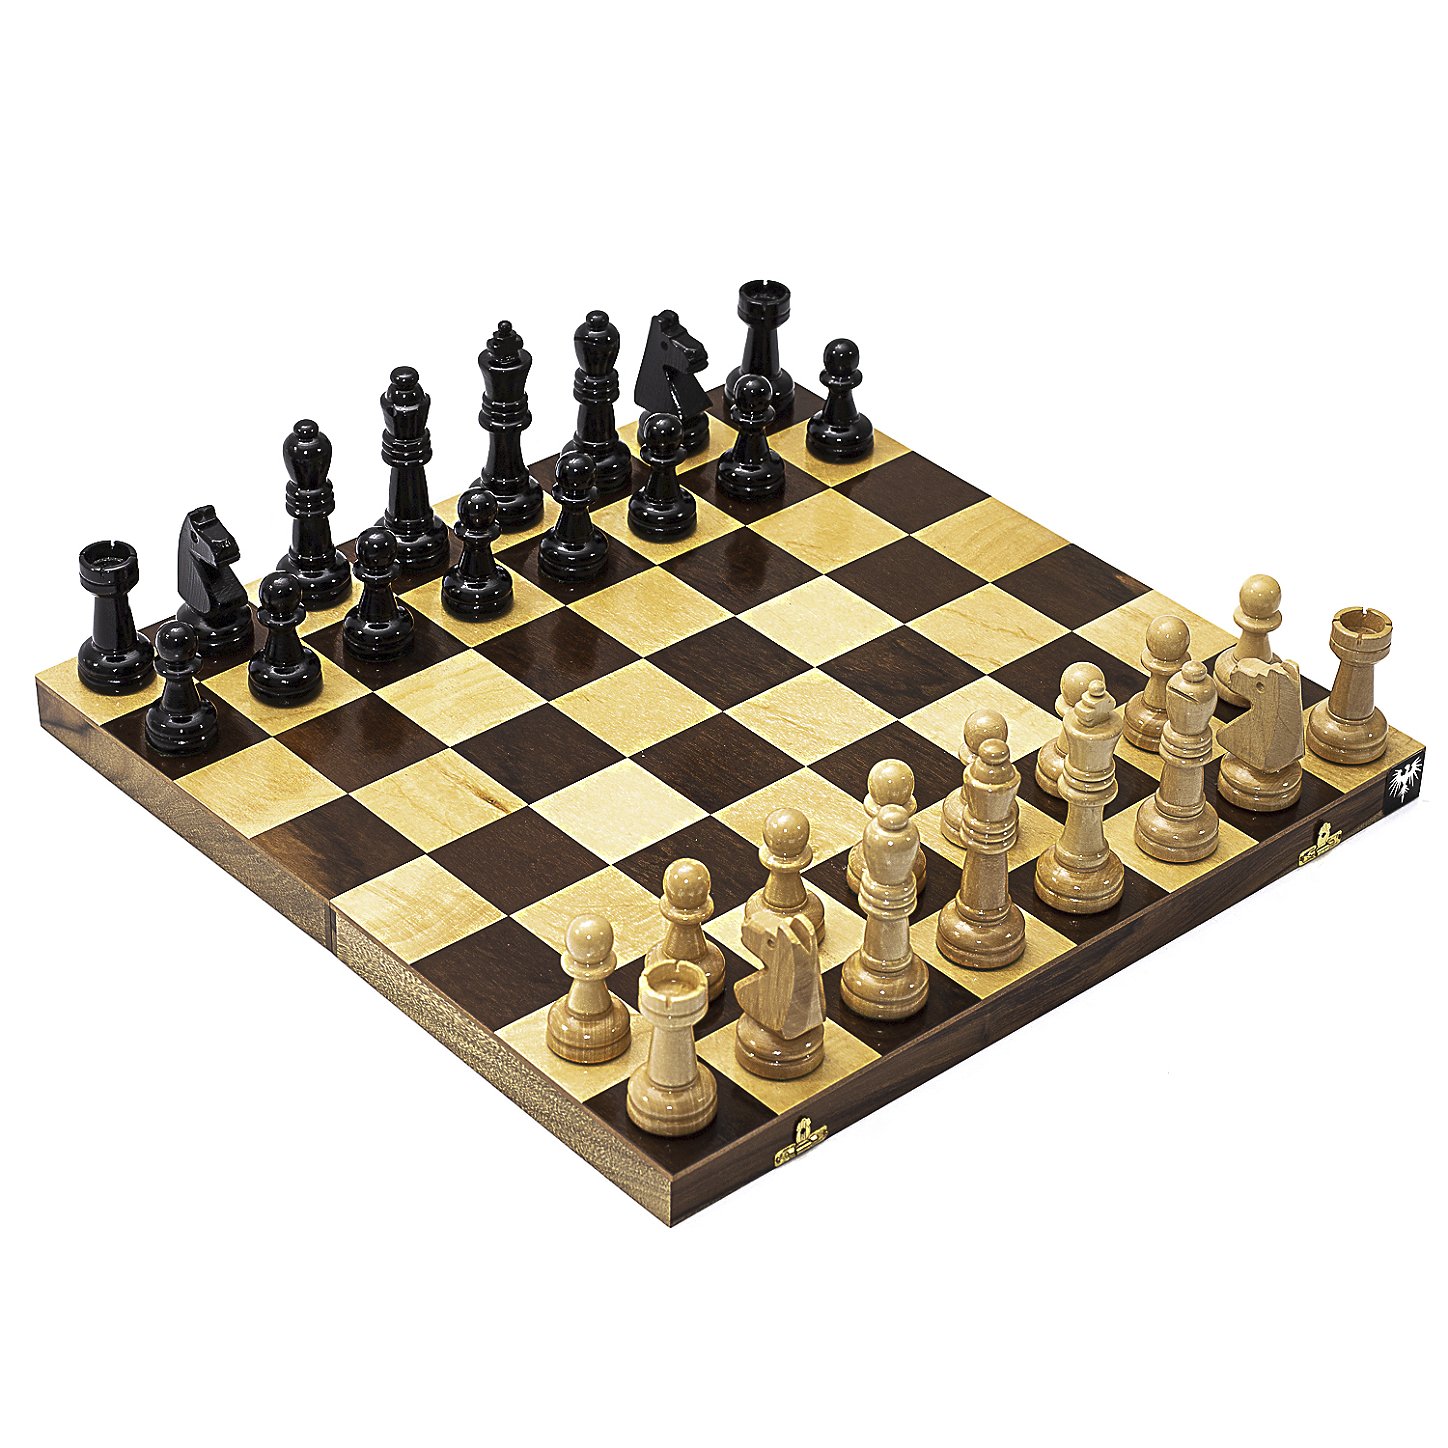 Um jogo de xadrez com peças de xadrez e um peão no topo.